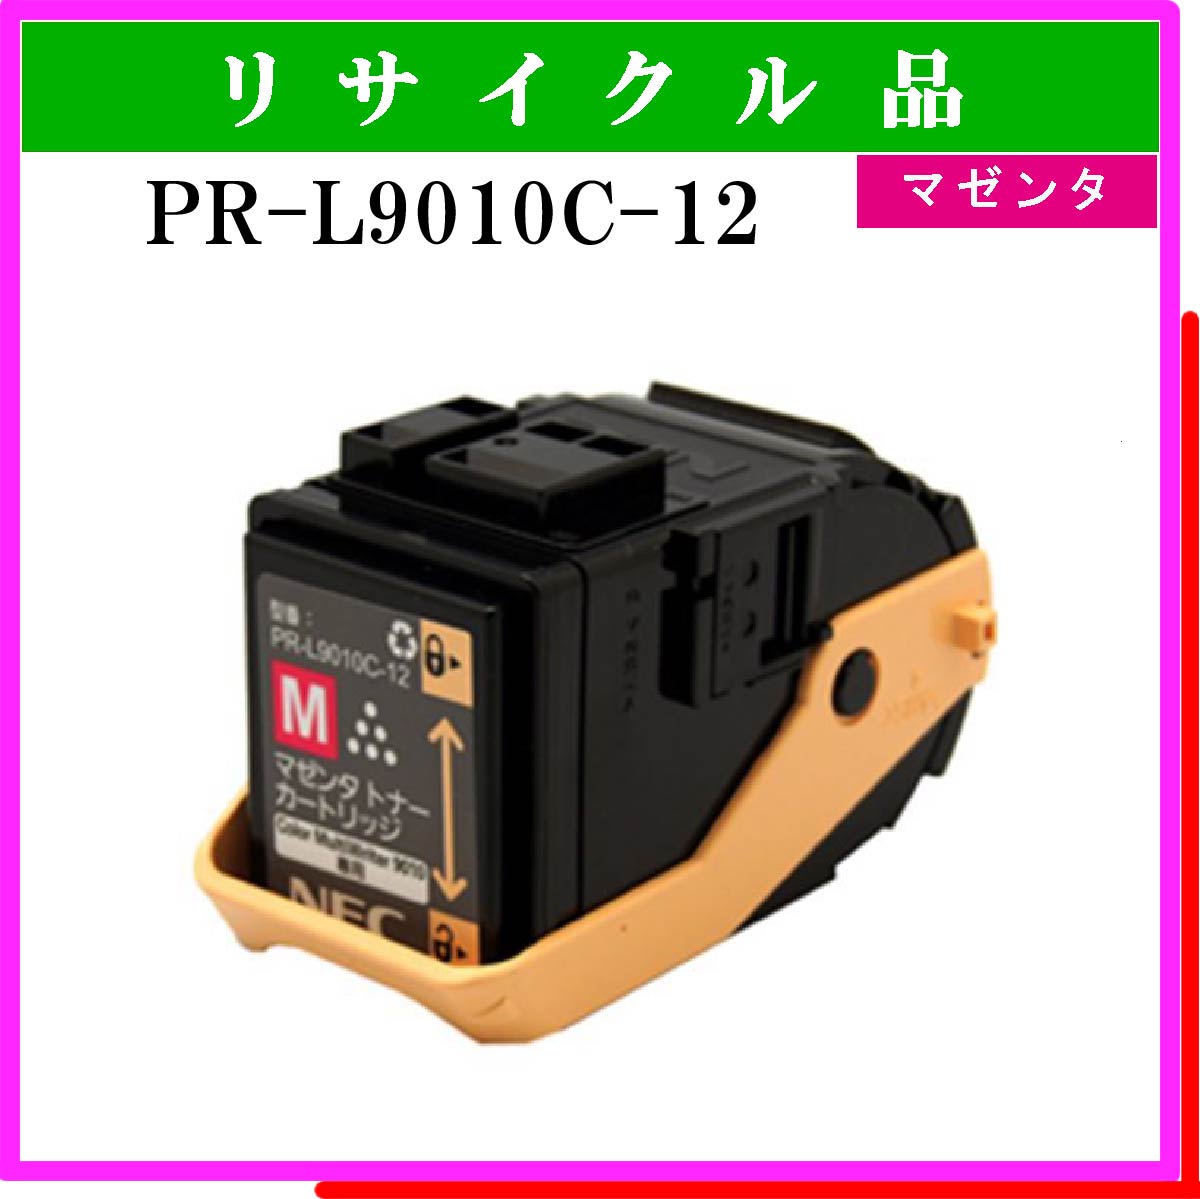 PR-L9010C-12